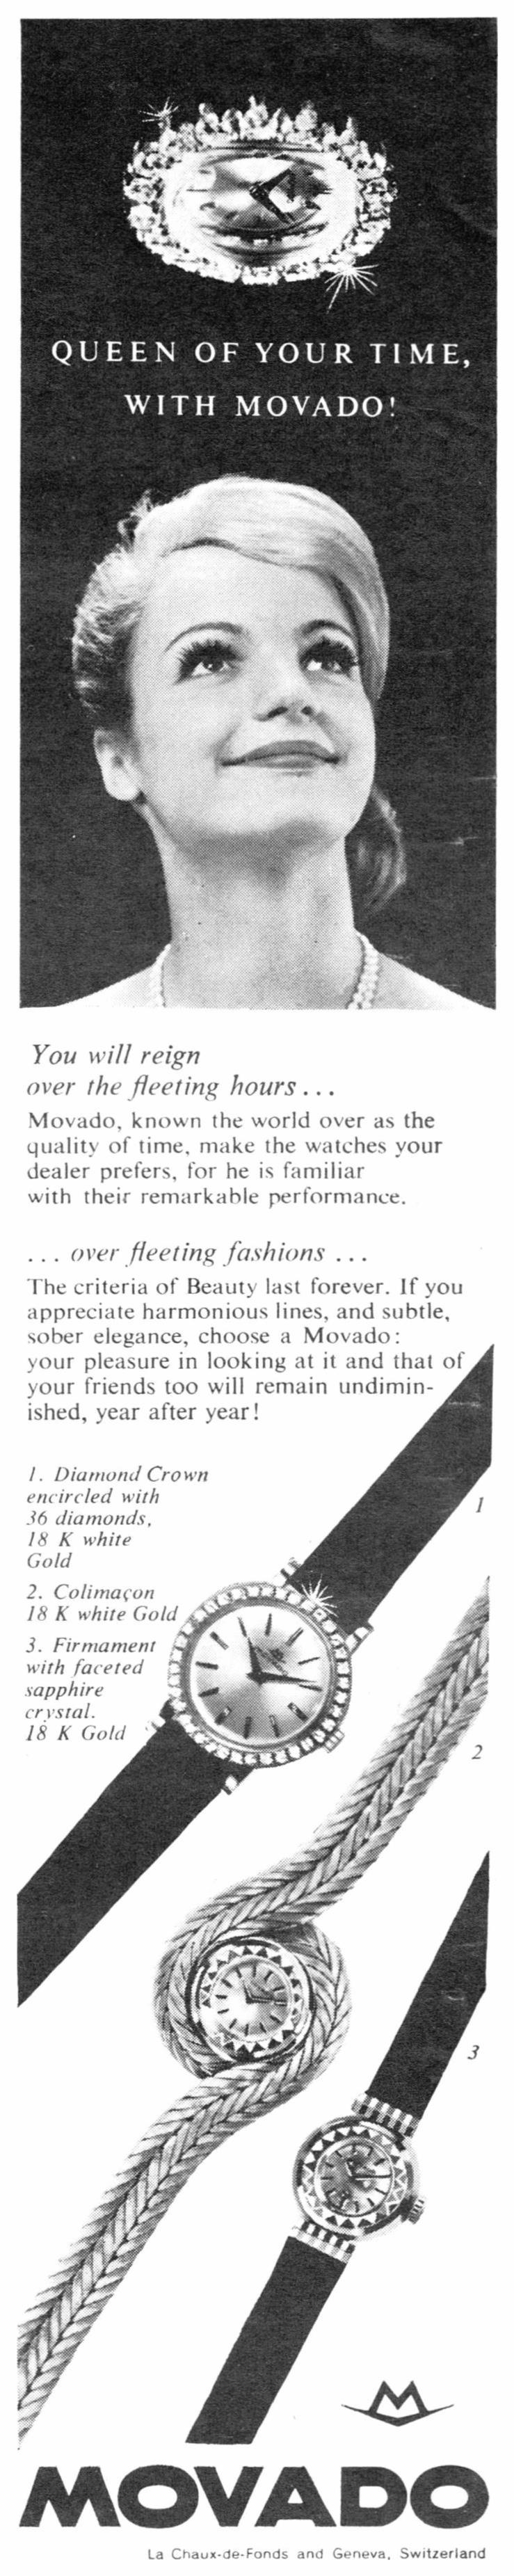 Movado 1963 01.jpg